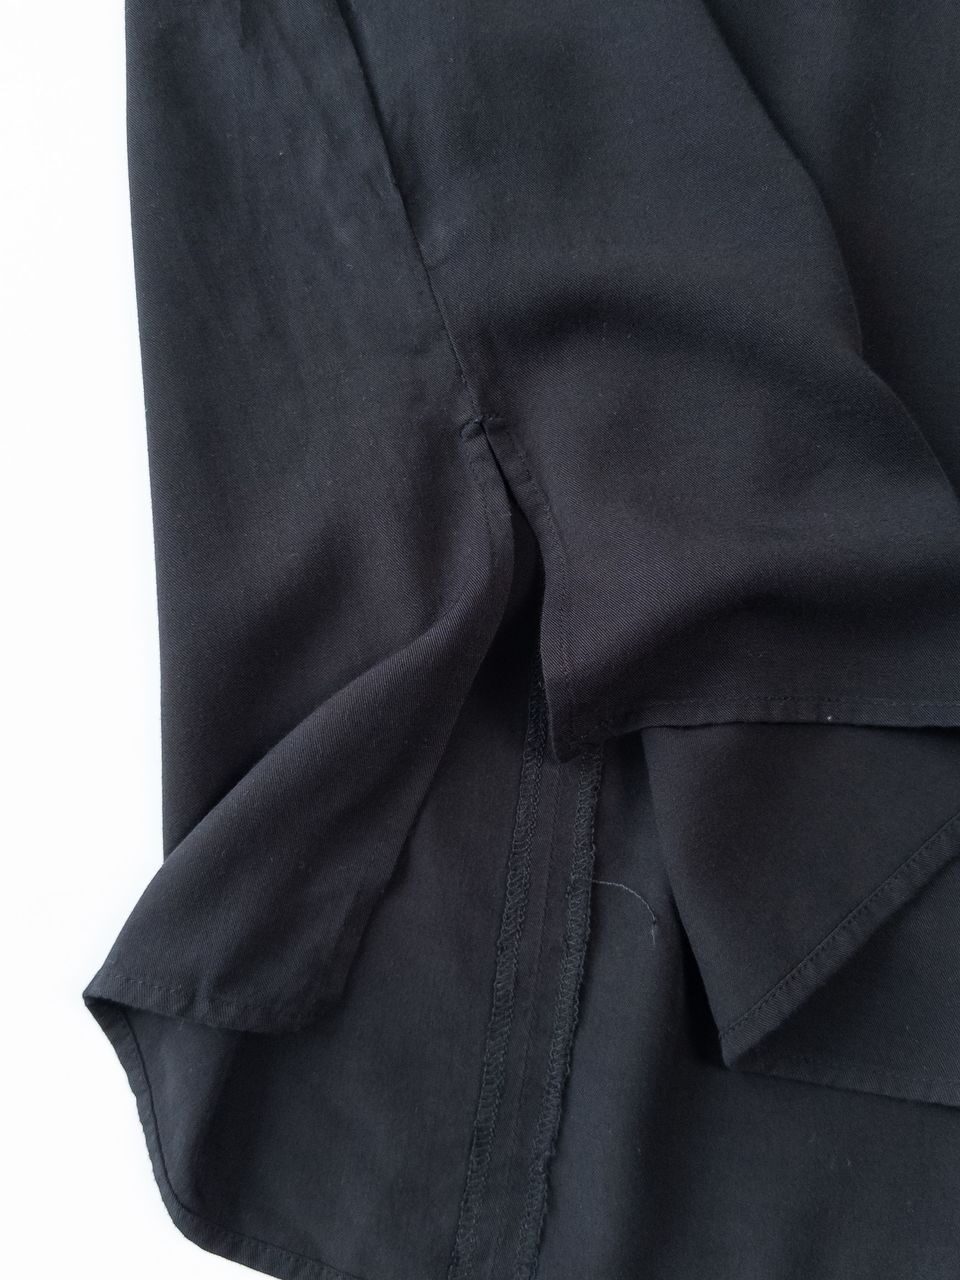 Блуза из вискозы с открытыми плечами цвет черный размер EUR 32 (rus 38) H&M